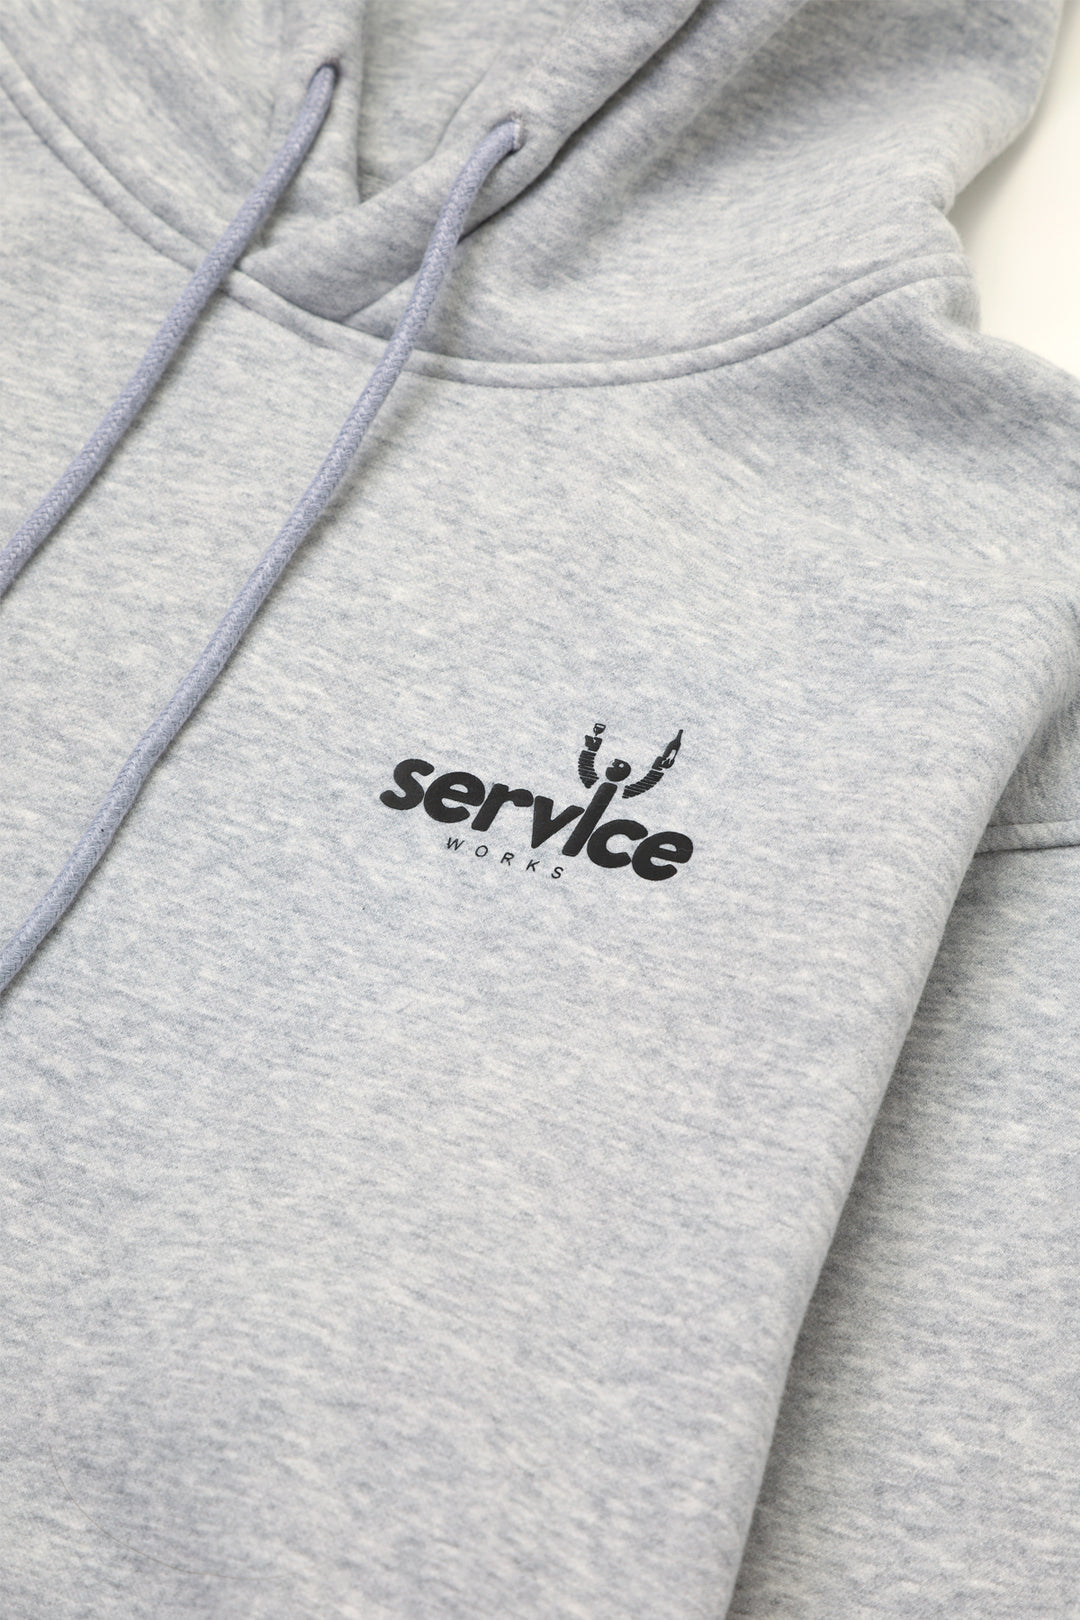 Service Works - Sommelier Hoodie - Grey